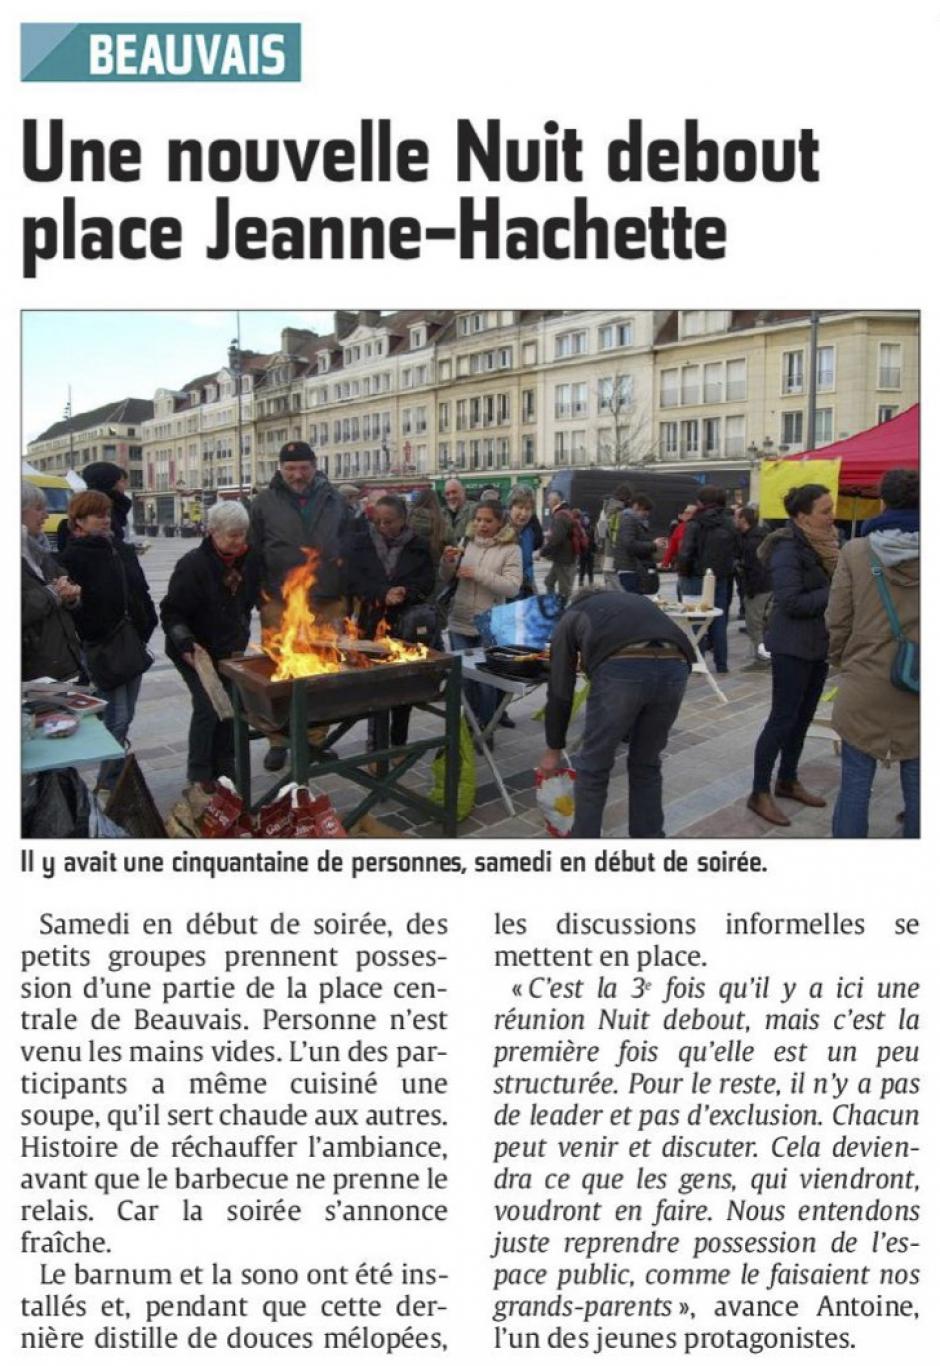 20160425-CP-Beauvais-Une nouvelle Nuit debout place Jeanne-Hachette